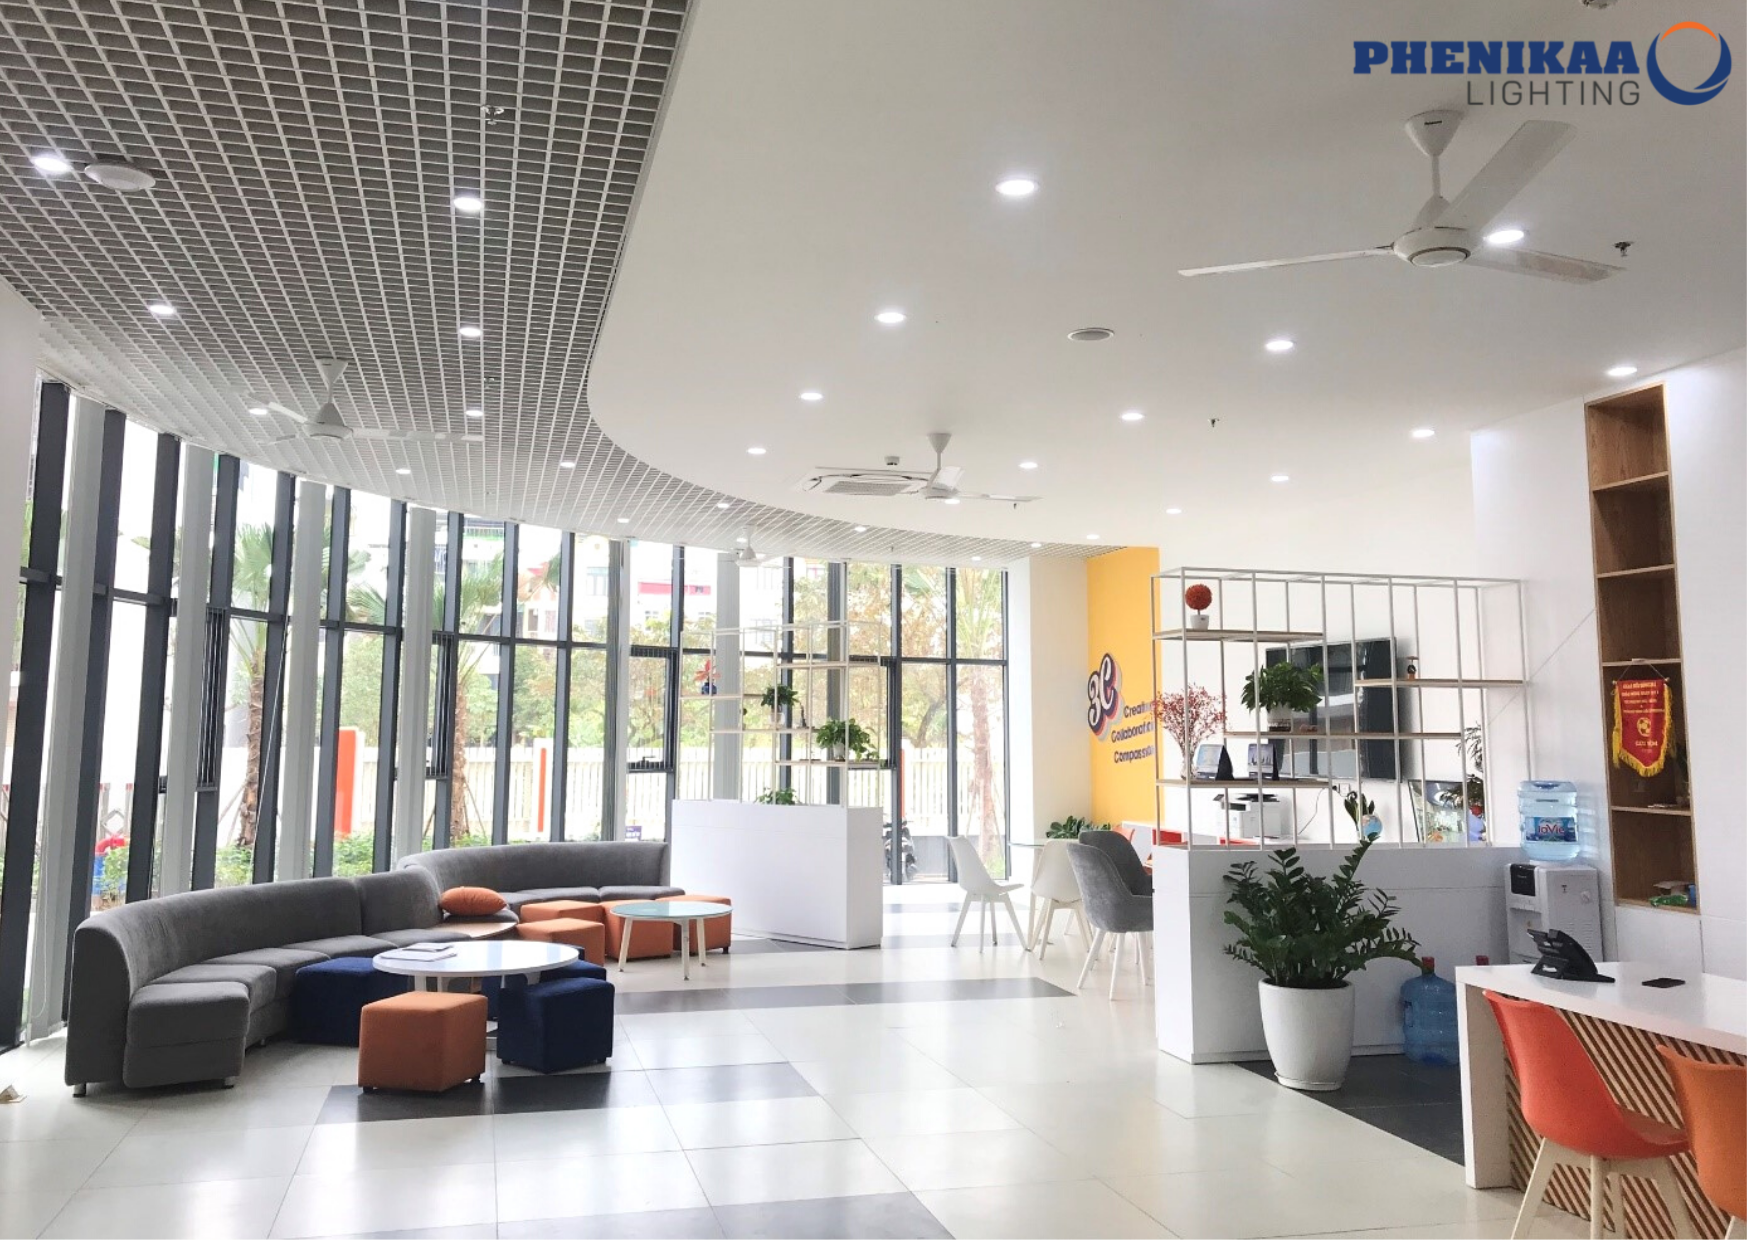 Đèn LED âm trần Phenikaa Lighting là lựa chọn tối ưu cho các không gian công cộng vì tiết kiệm điện năng